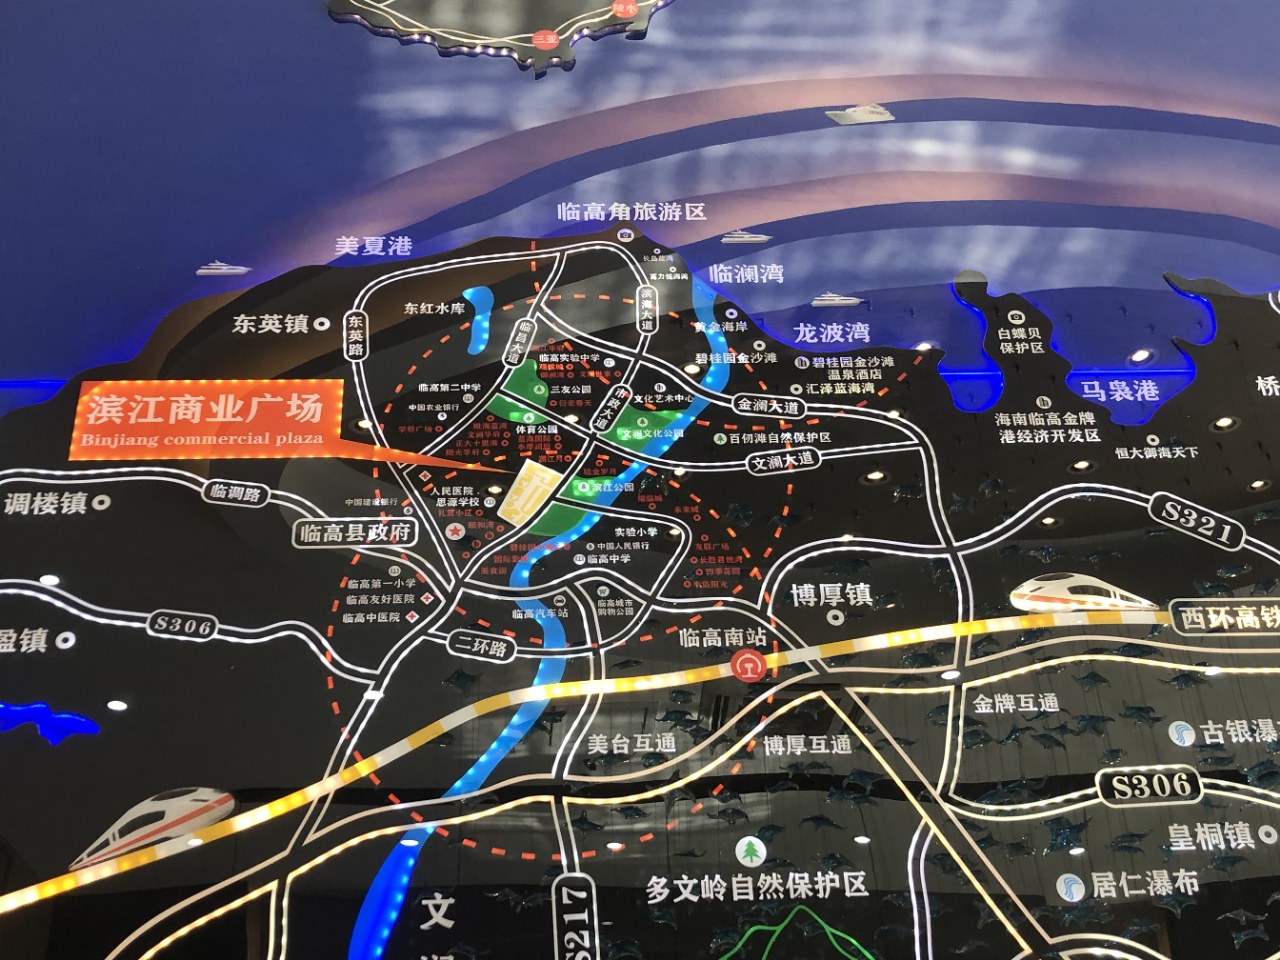 滨江商业广场项目区位图